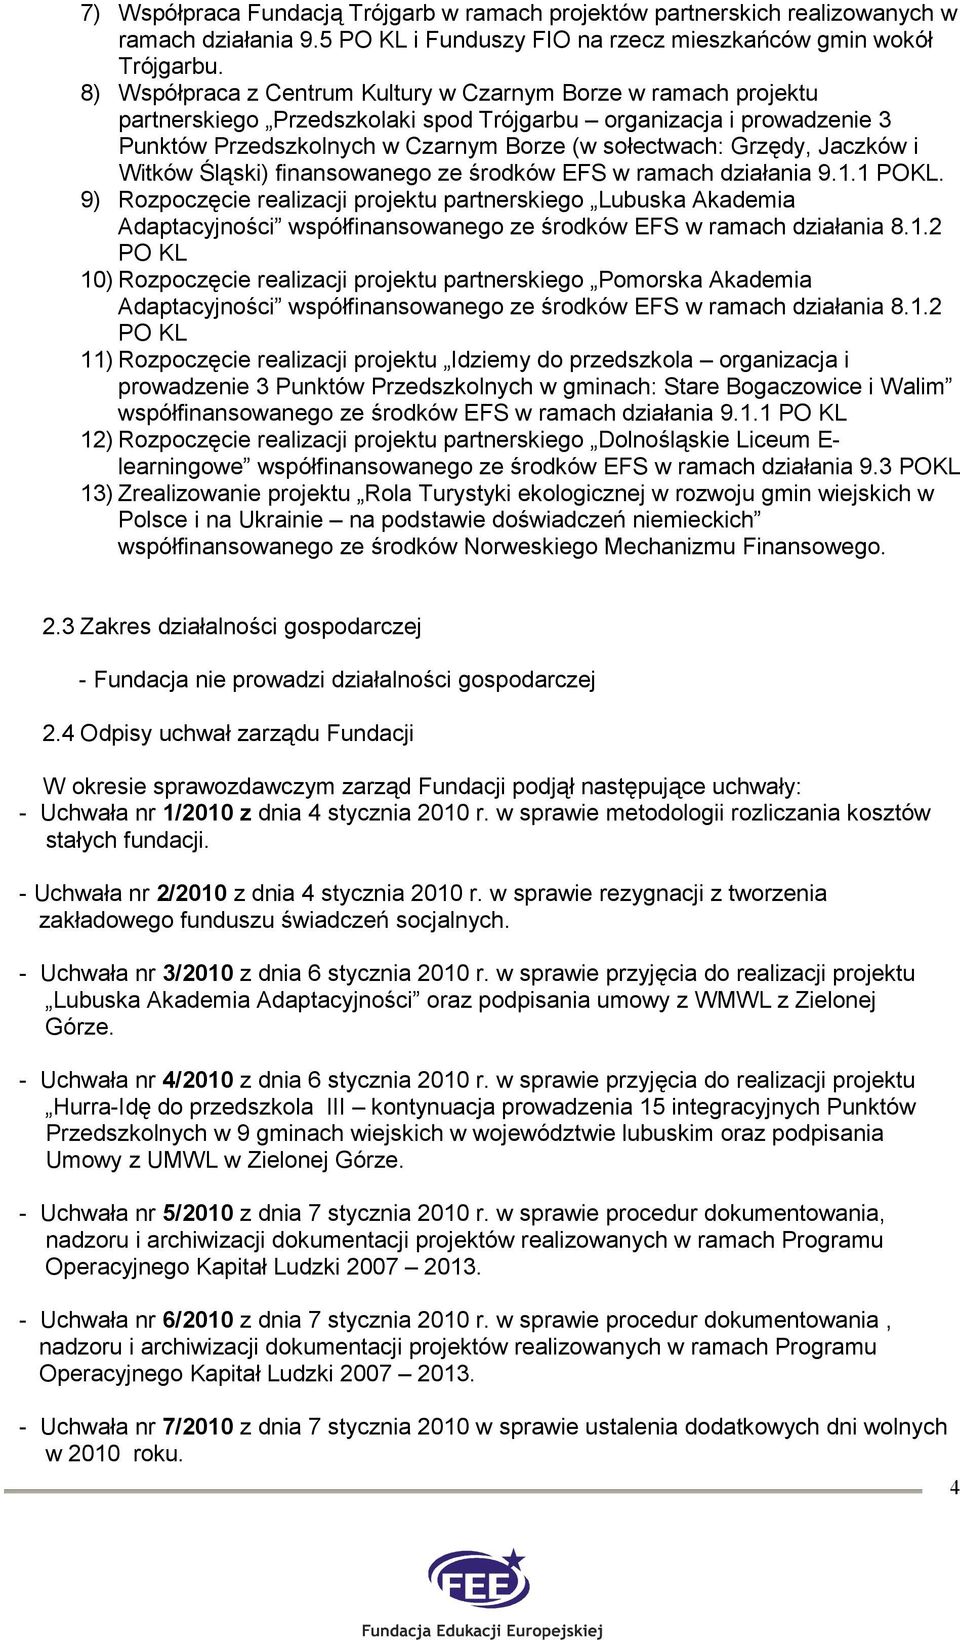 Jaczków i Witków Śląski) finansowanego ze środków EFS w ramach działania 9.1.1 POKL.